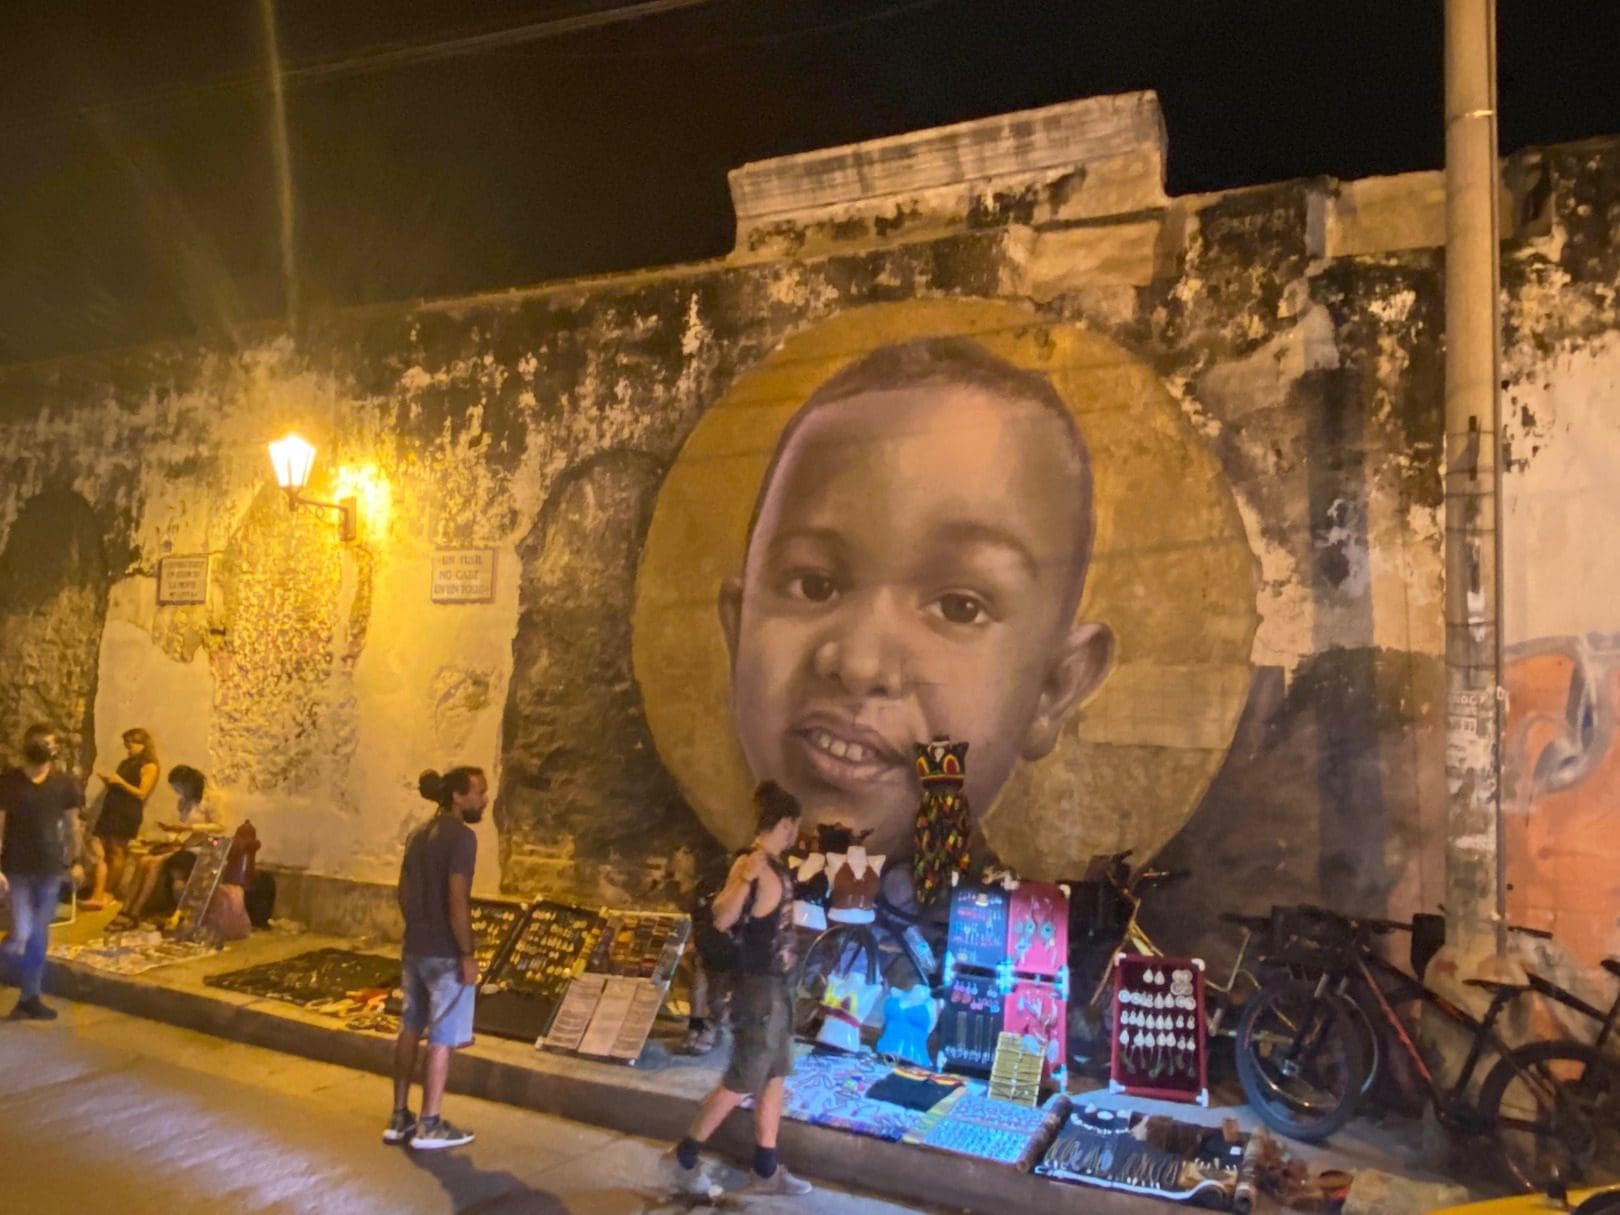 Cartagena graffiti art in Getsemaní